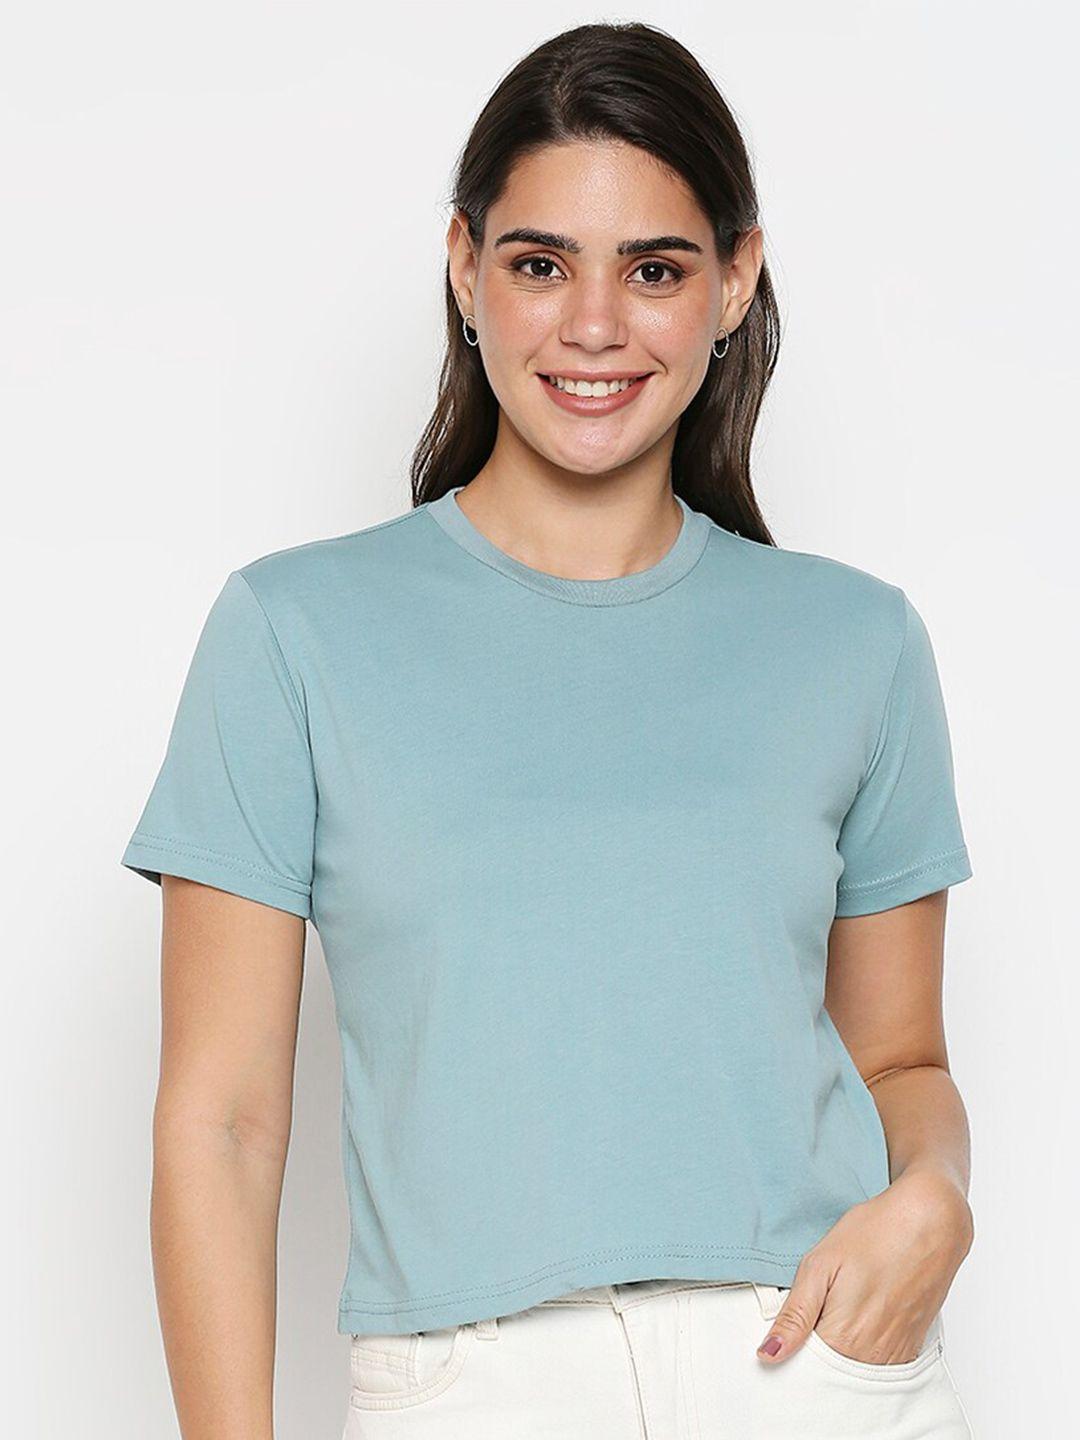 20dresses women blue pure cotton t-shirt